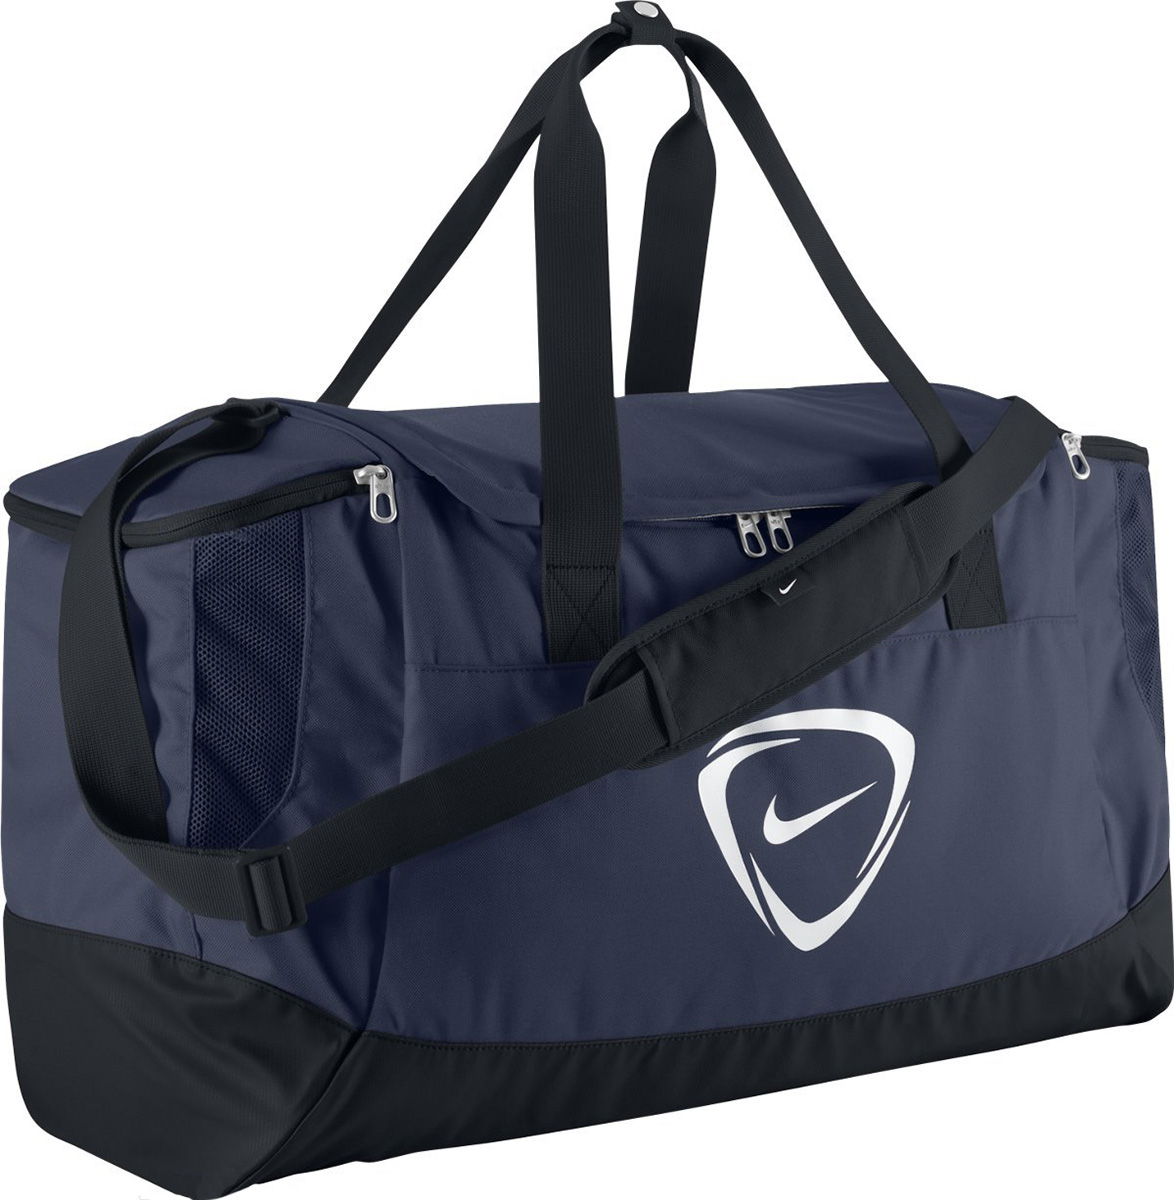 CLUB TEAM DUFFEL L - Sports bag